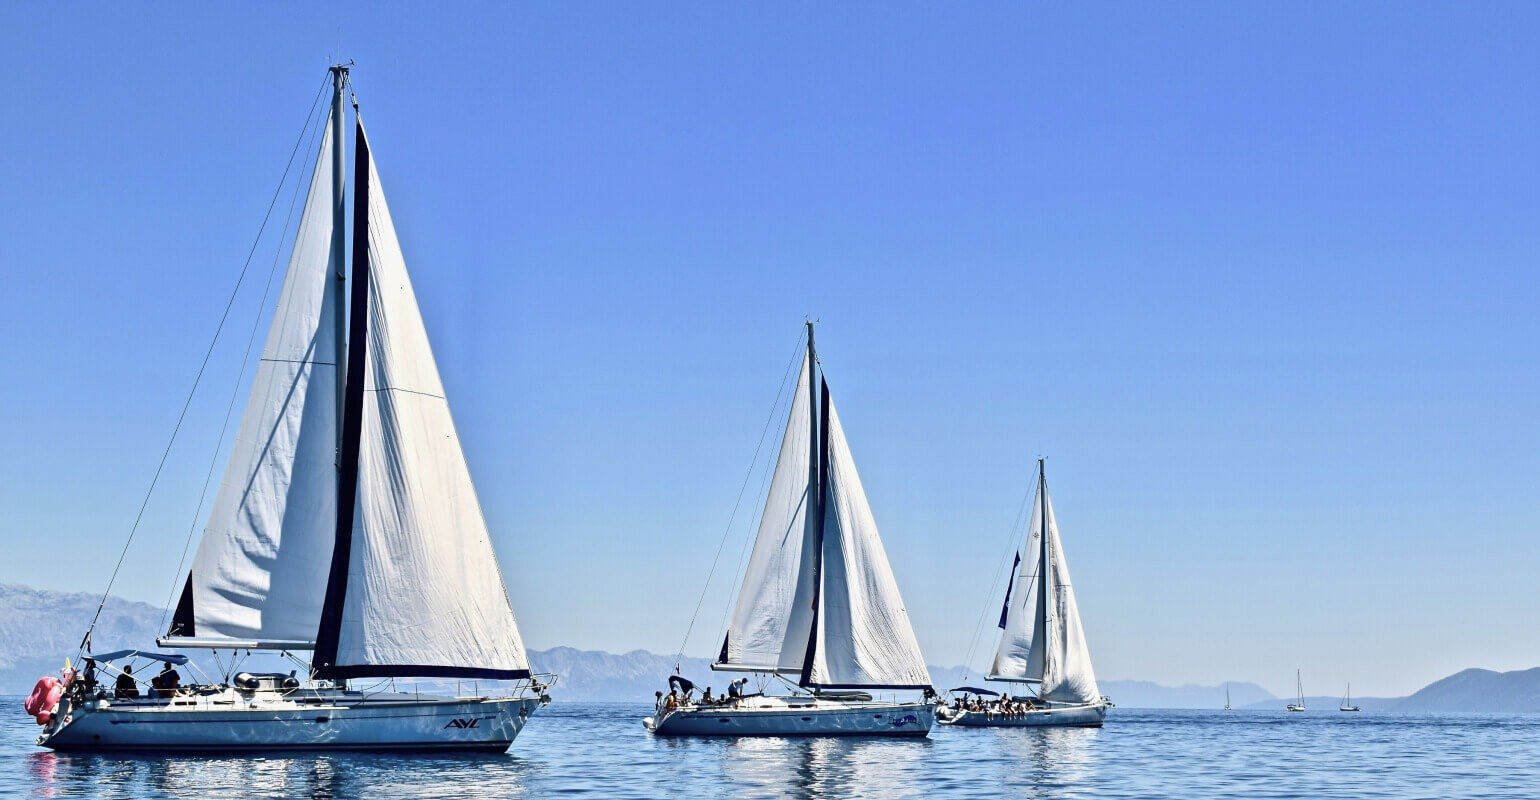 Sailboats at sea